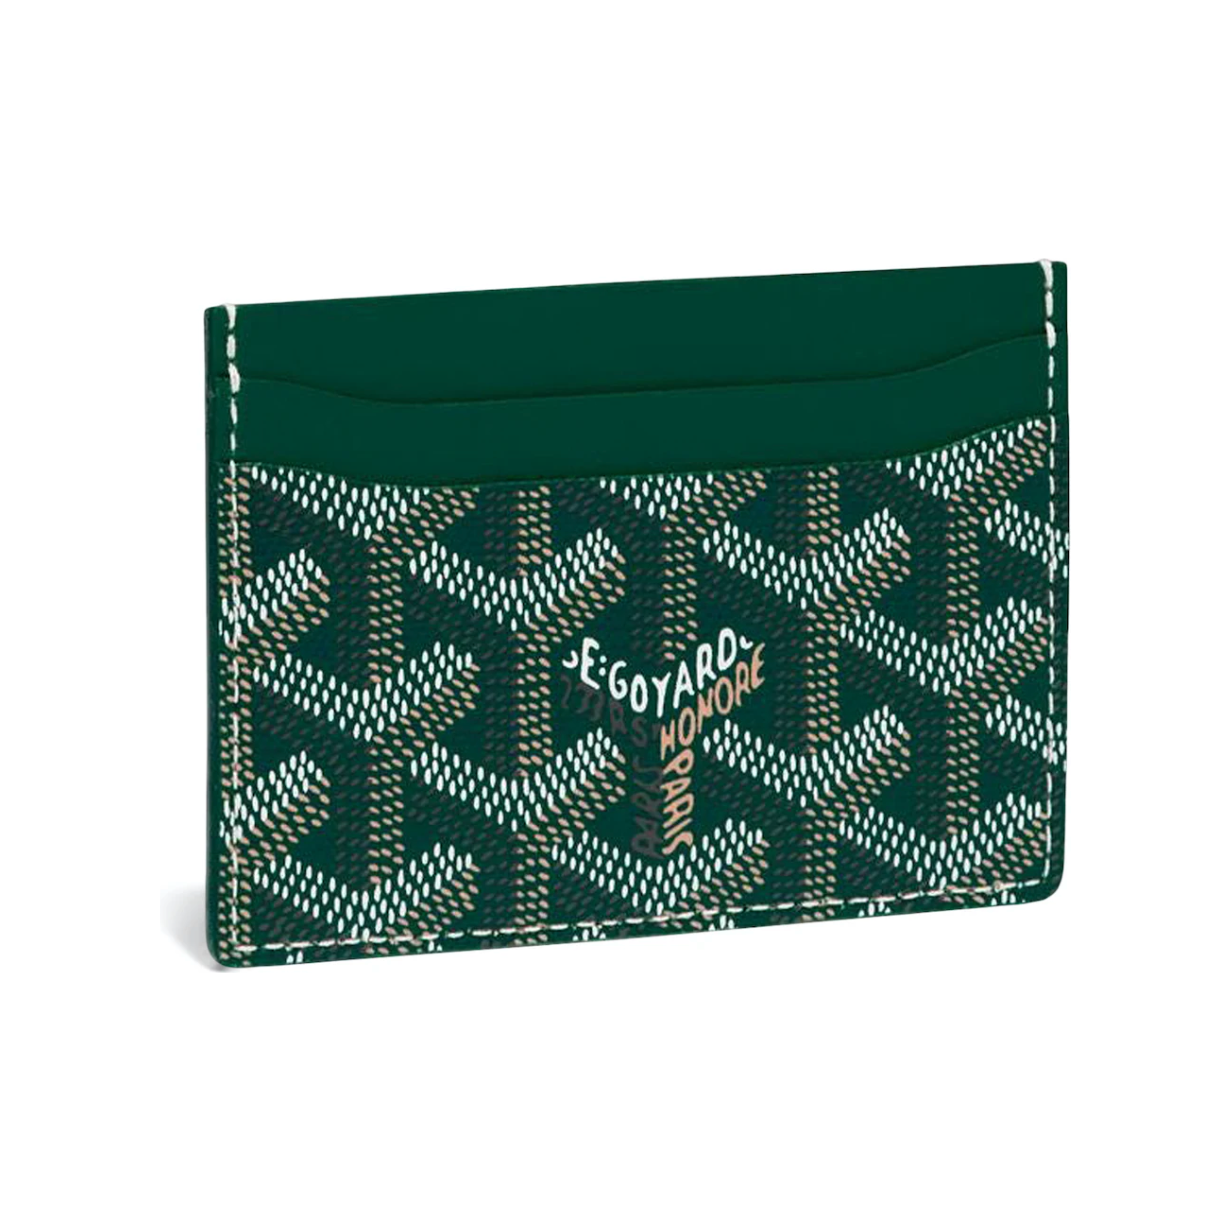 Goyard - Saint-Sulpice Card Wallet Green by Goyard from £450.00